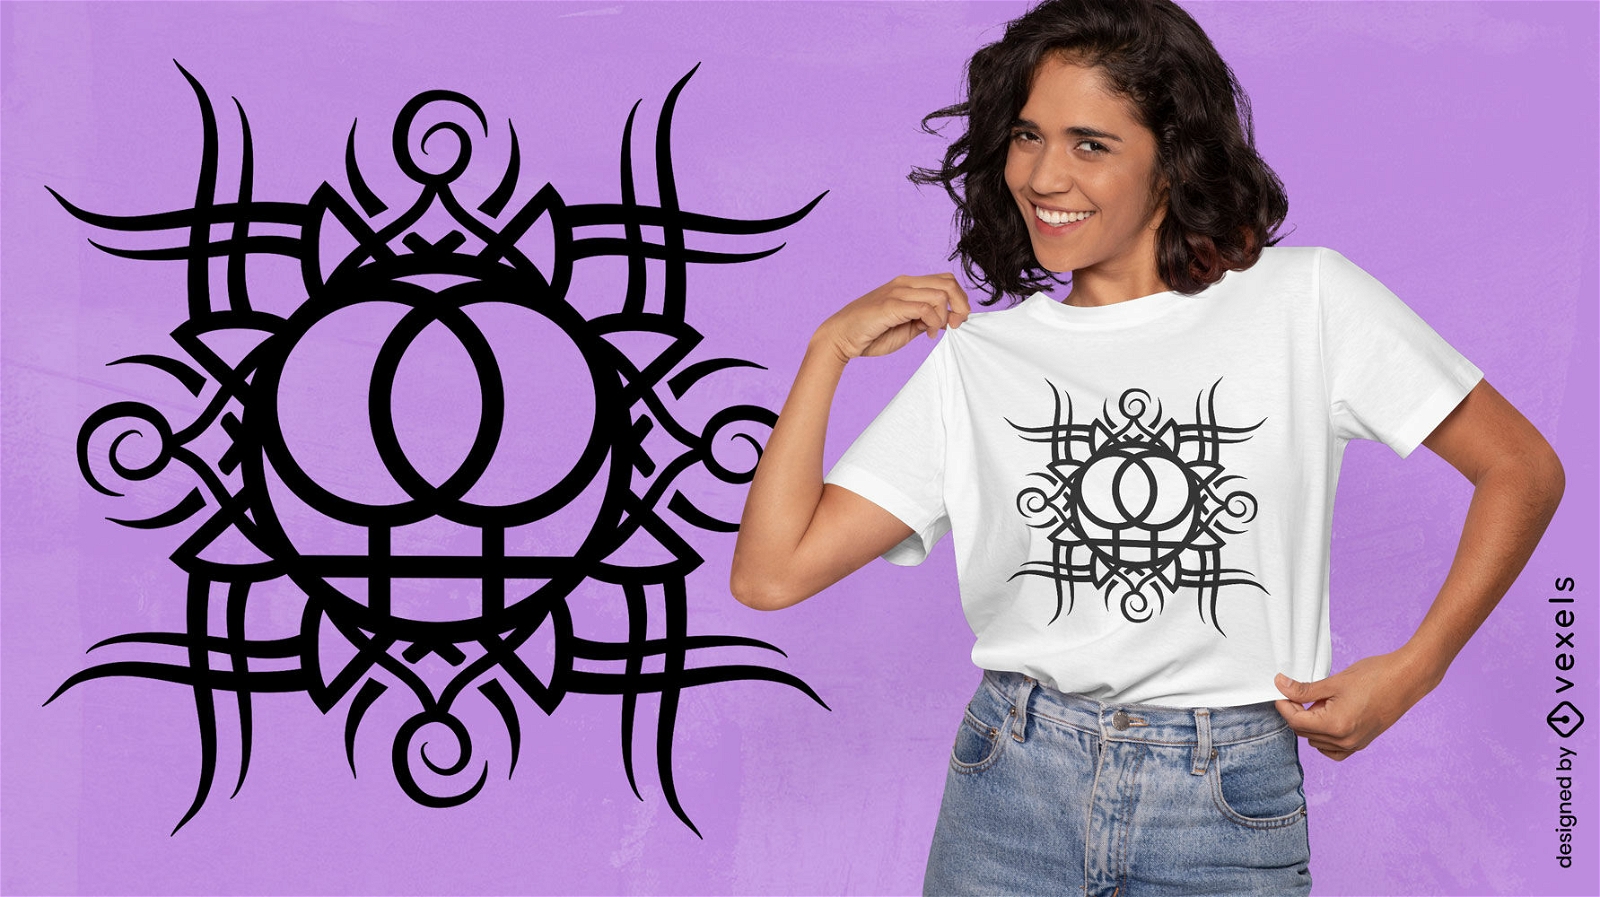 Descarga Vector De De Camiseta De Símbolo Tribal Feminista